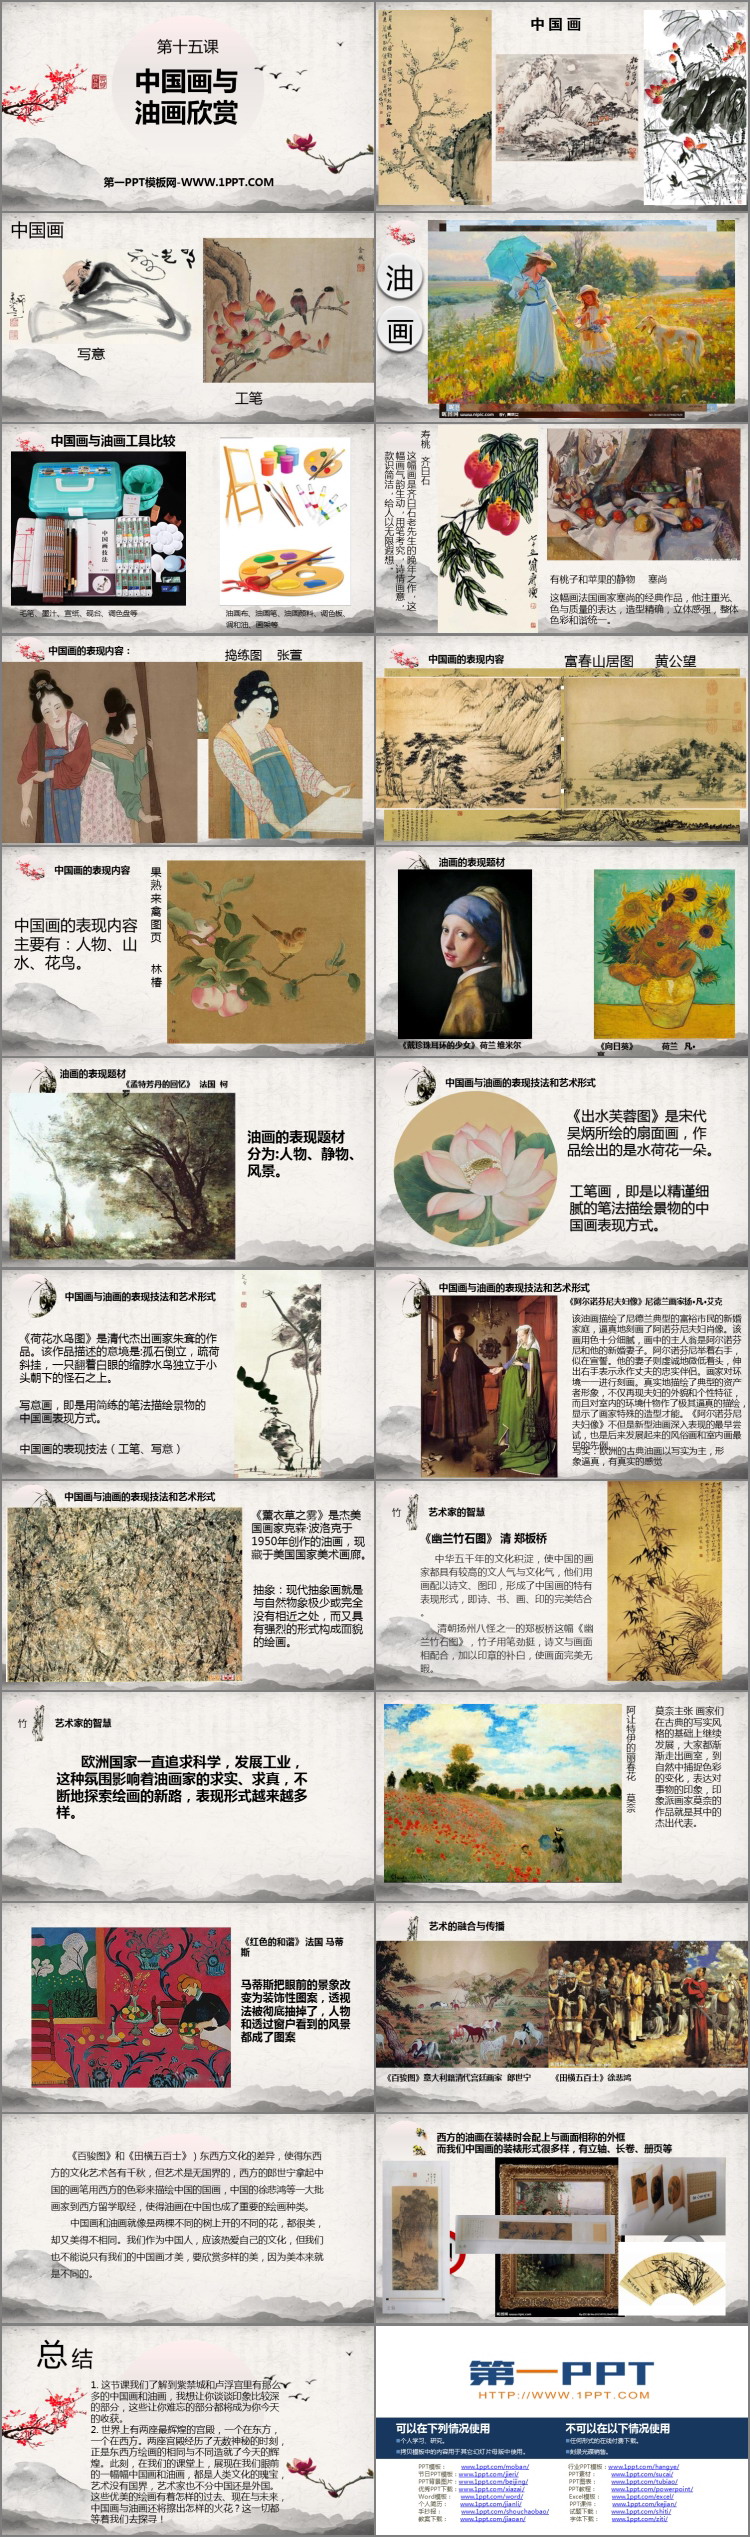 《中国画与油画欣赏》PPT精品课件